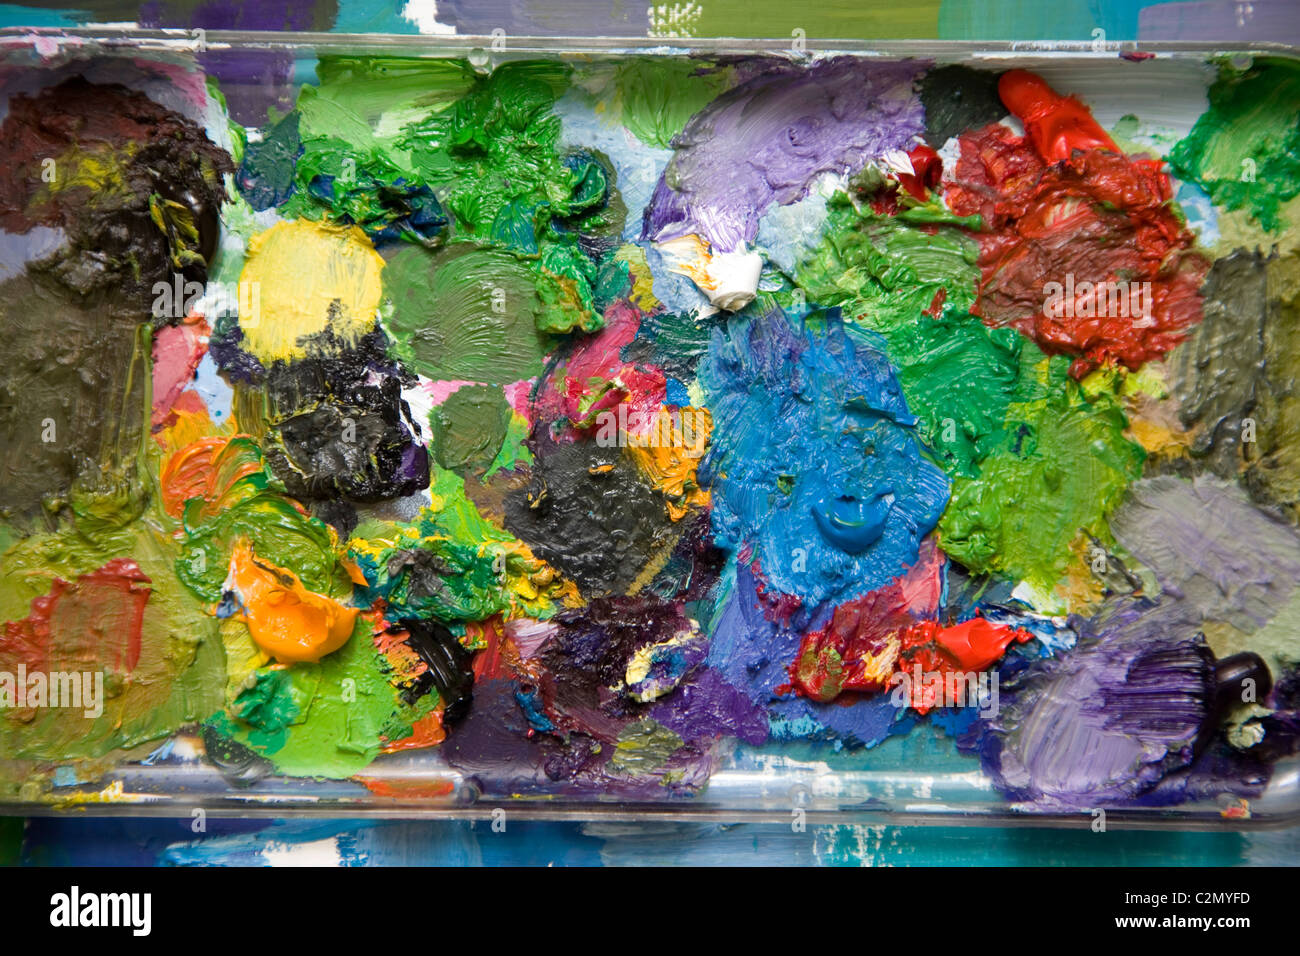 Mischen von Ölfarben auf palette Stockfotografie - Alamy